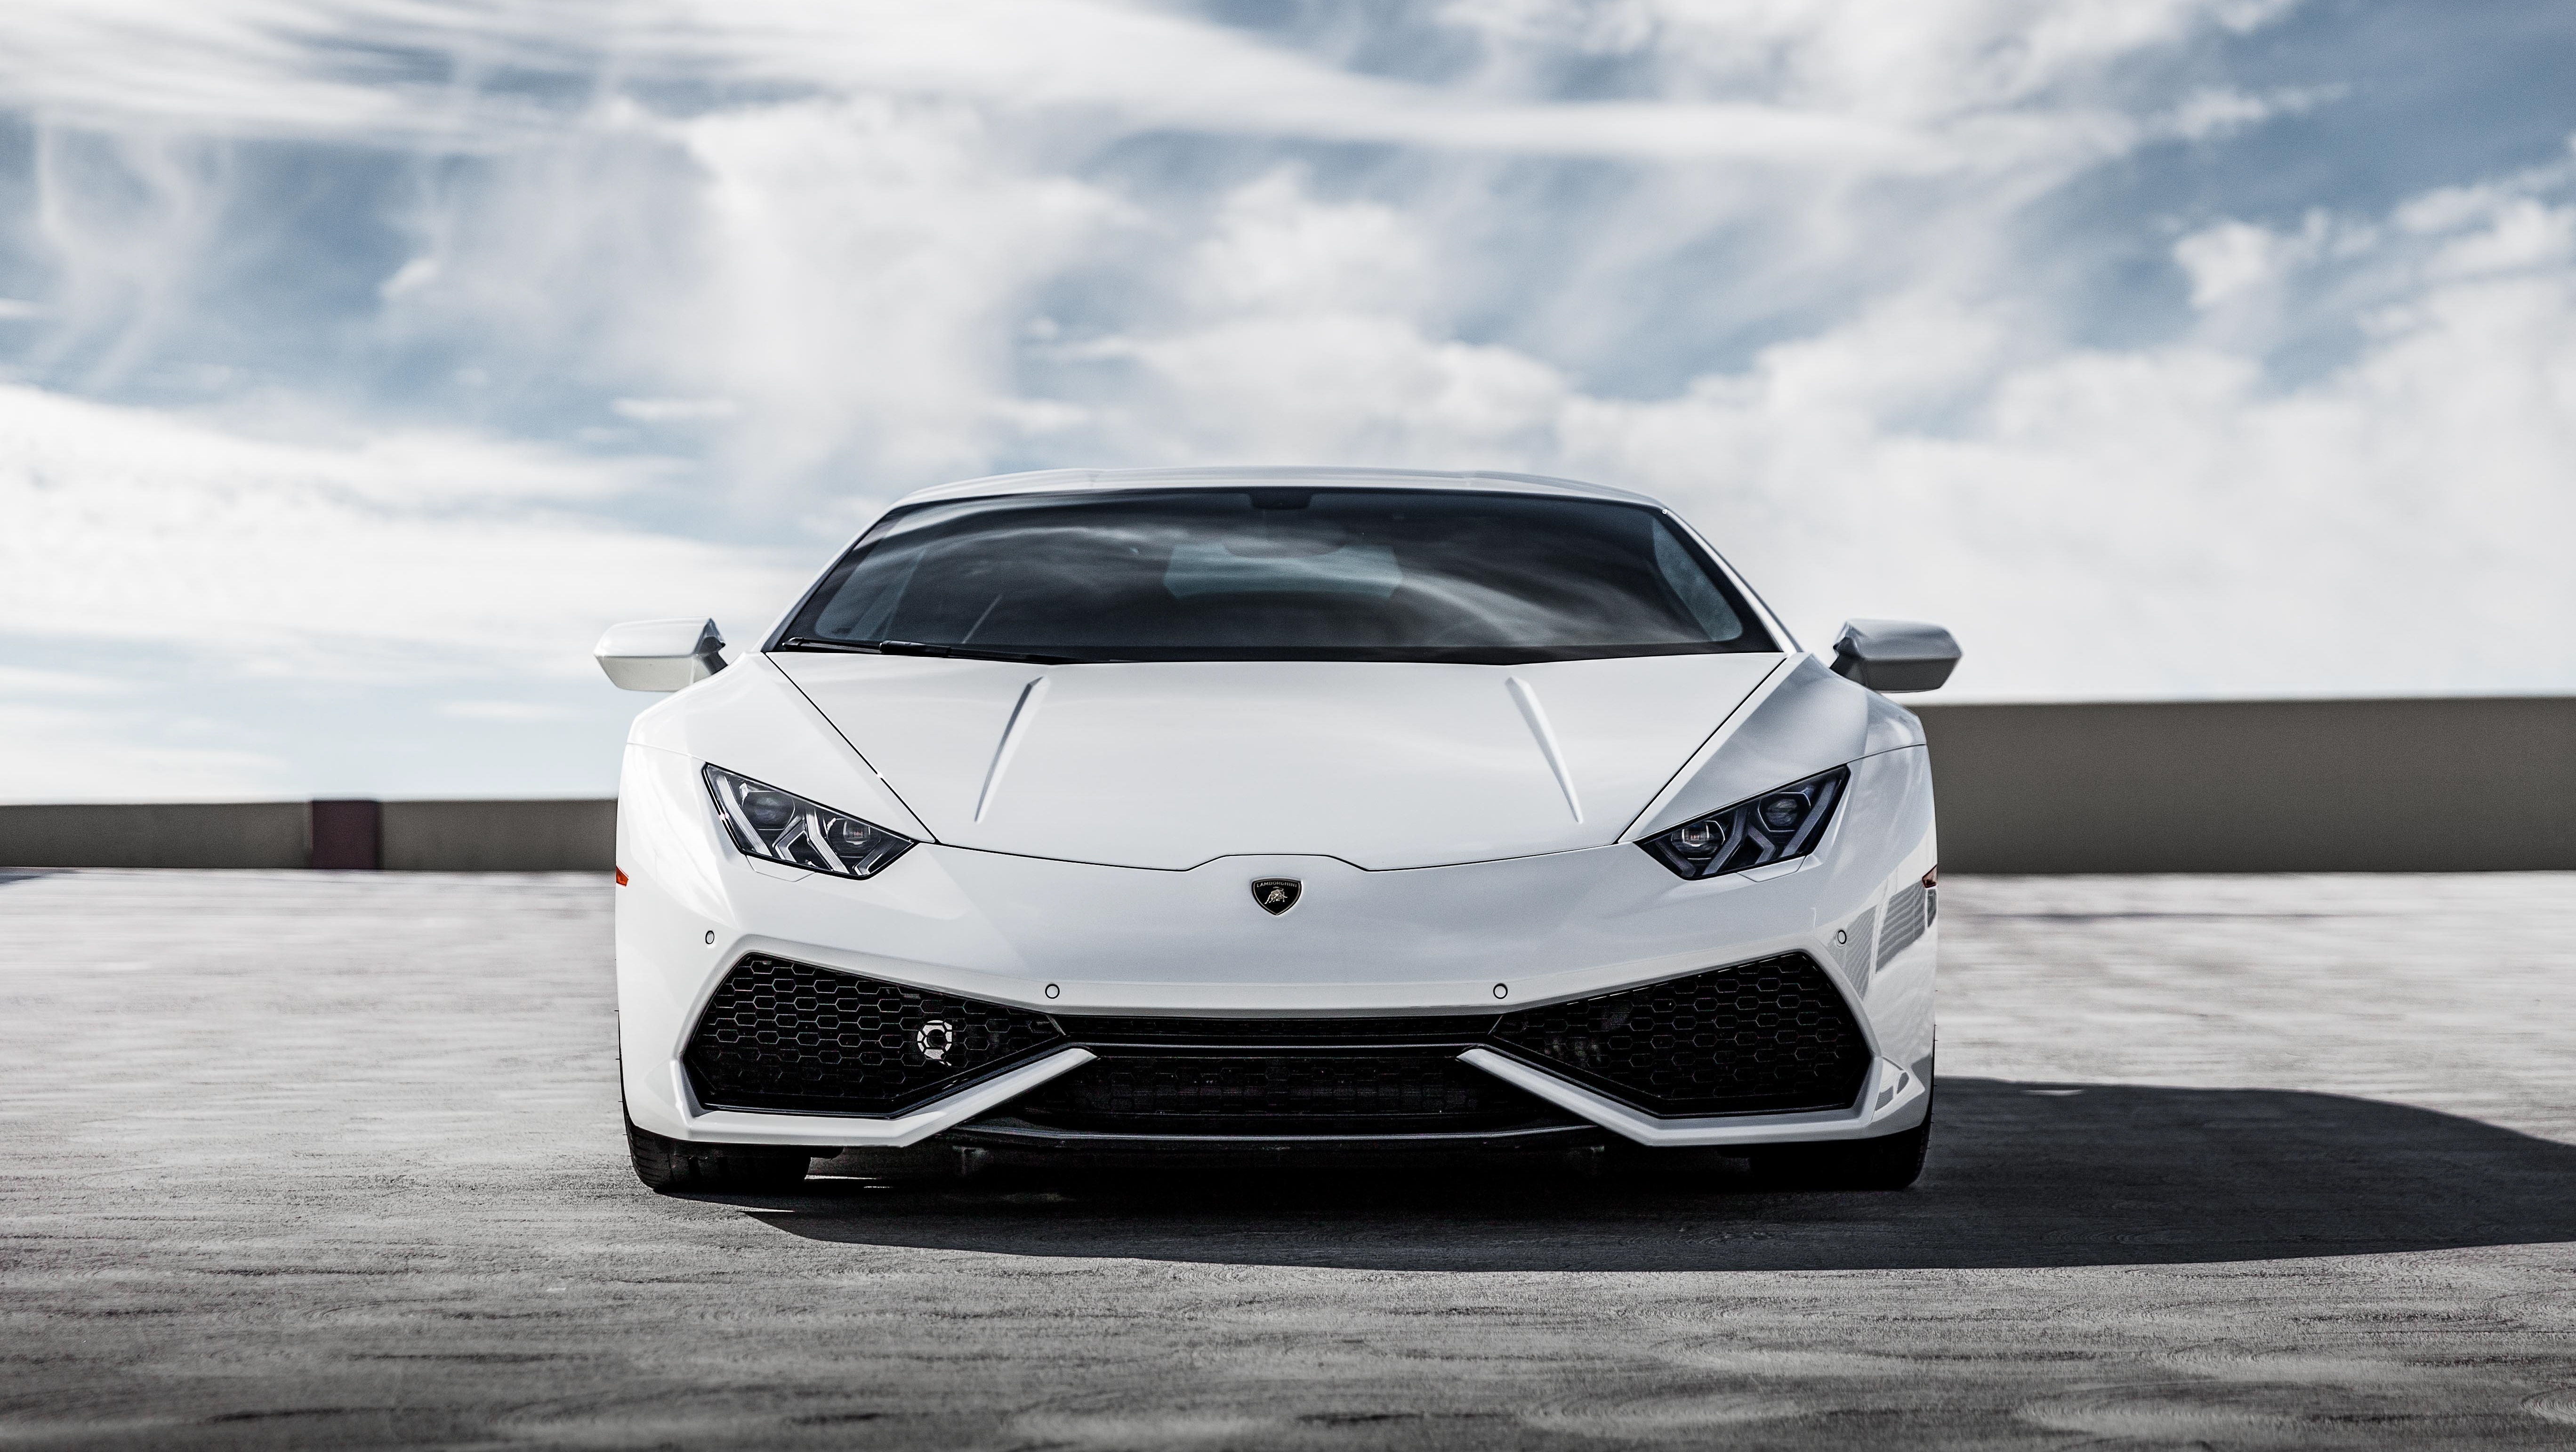 Free download wallpaper Lamborghini, Car, Supercar, Vehicles, White Car, Lamborghini Huracán on your PC desktop